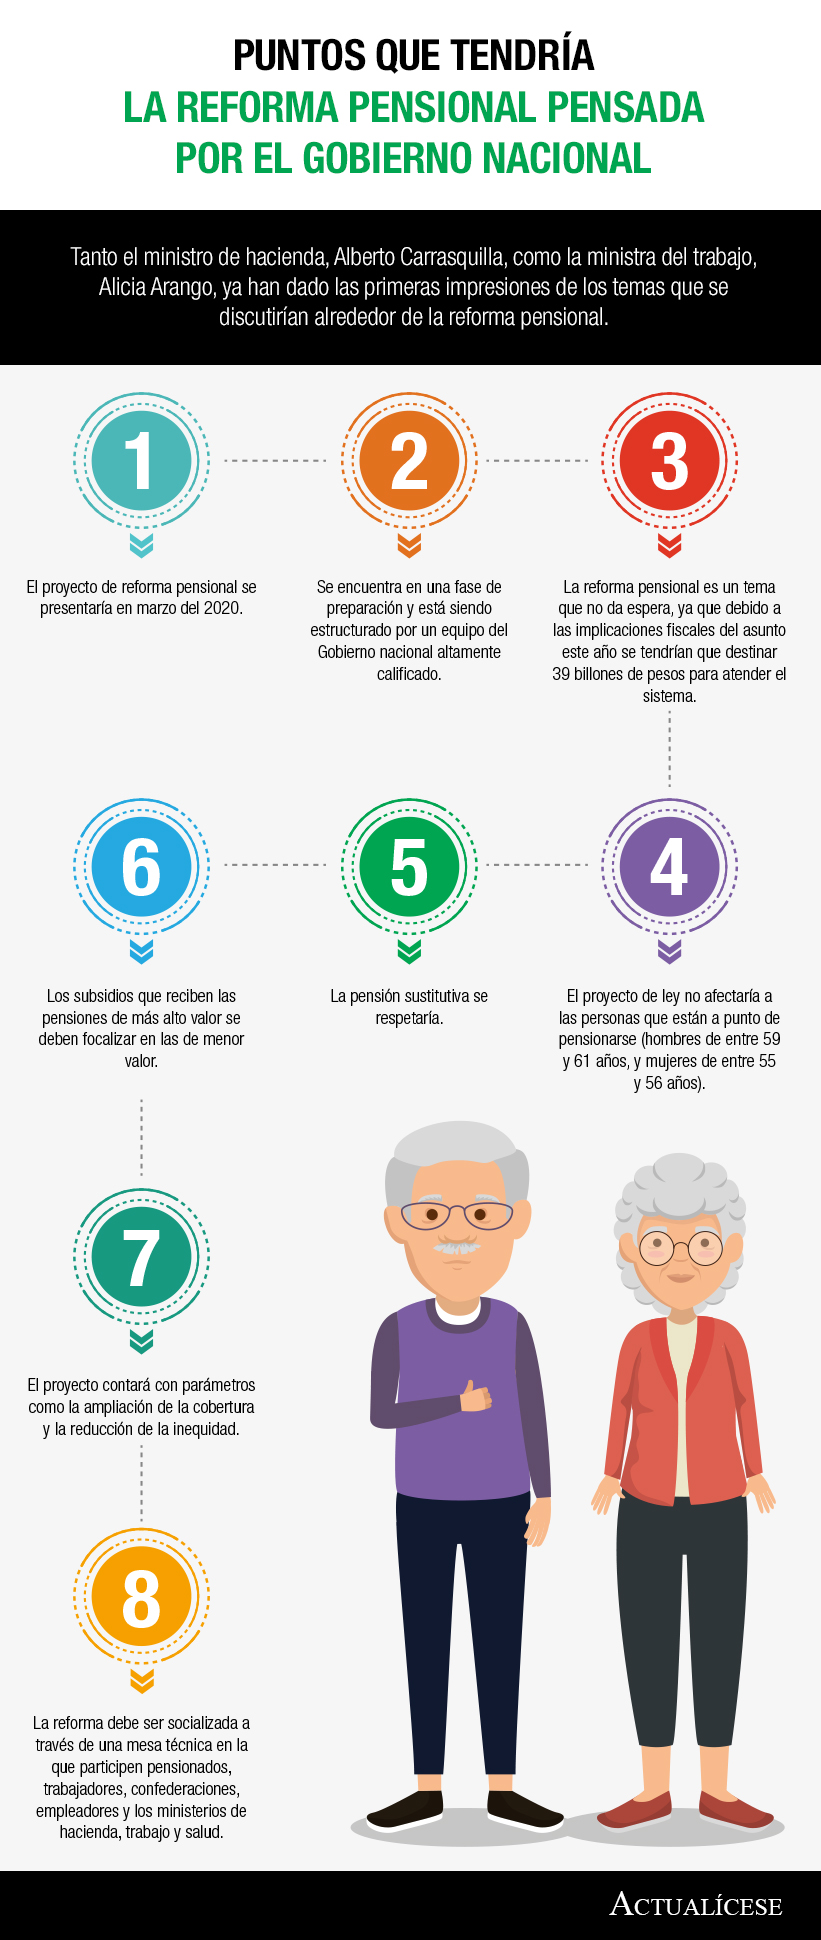 [Infografía] Puntos que tendría la reforma pensional pensada por el Gobierno nacional